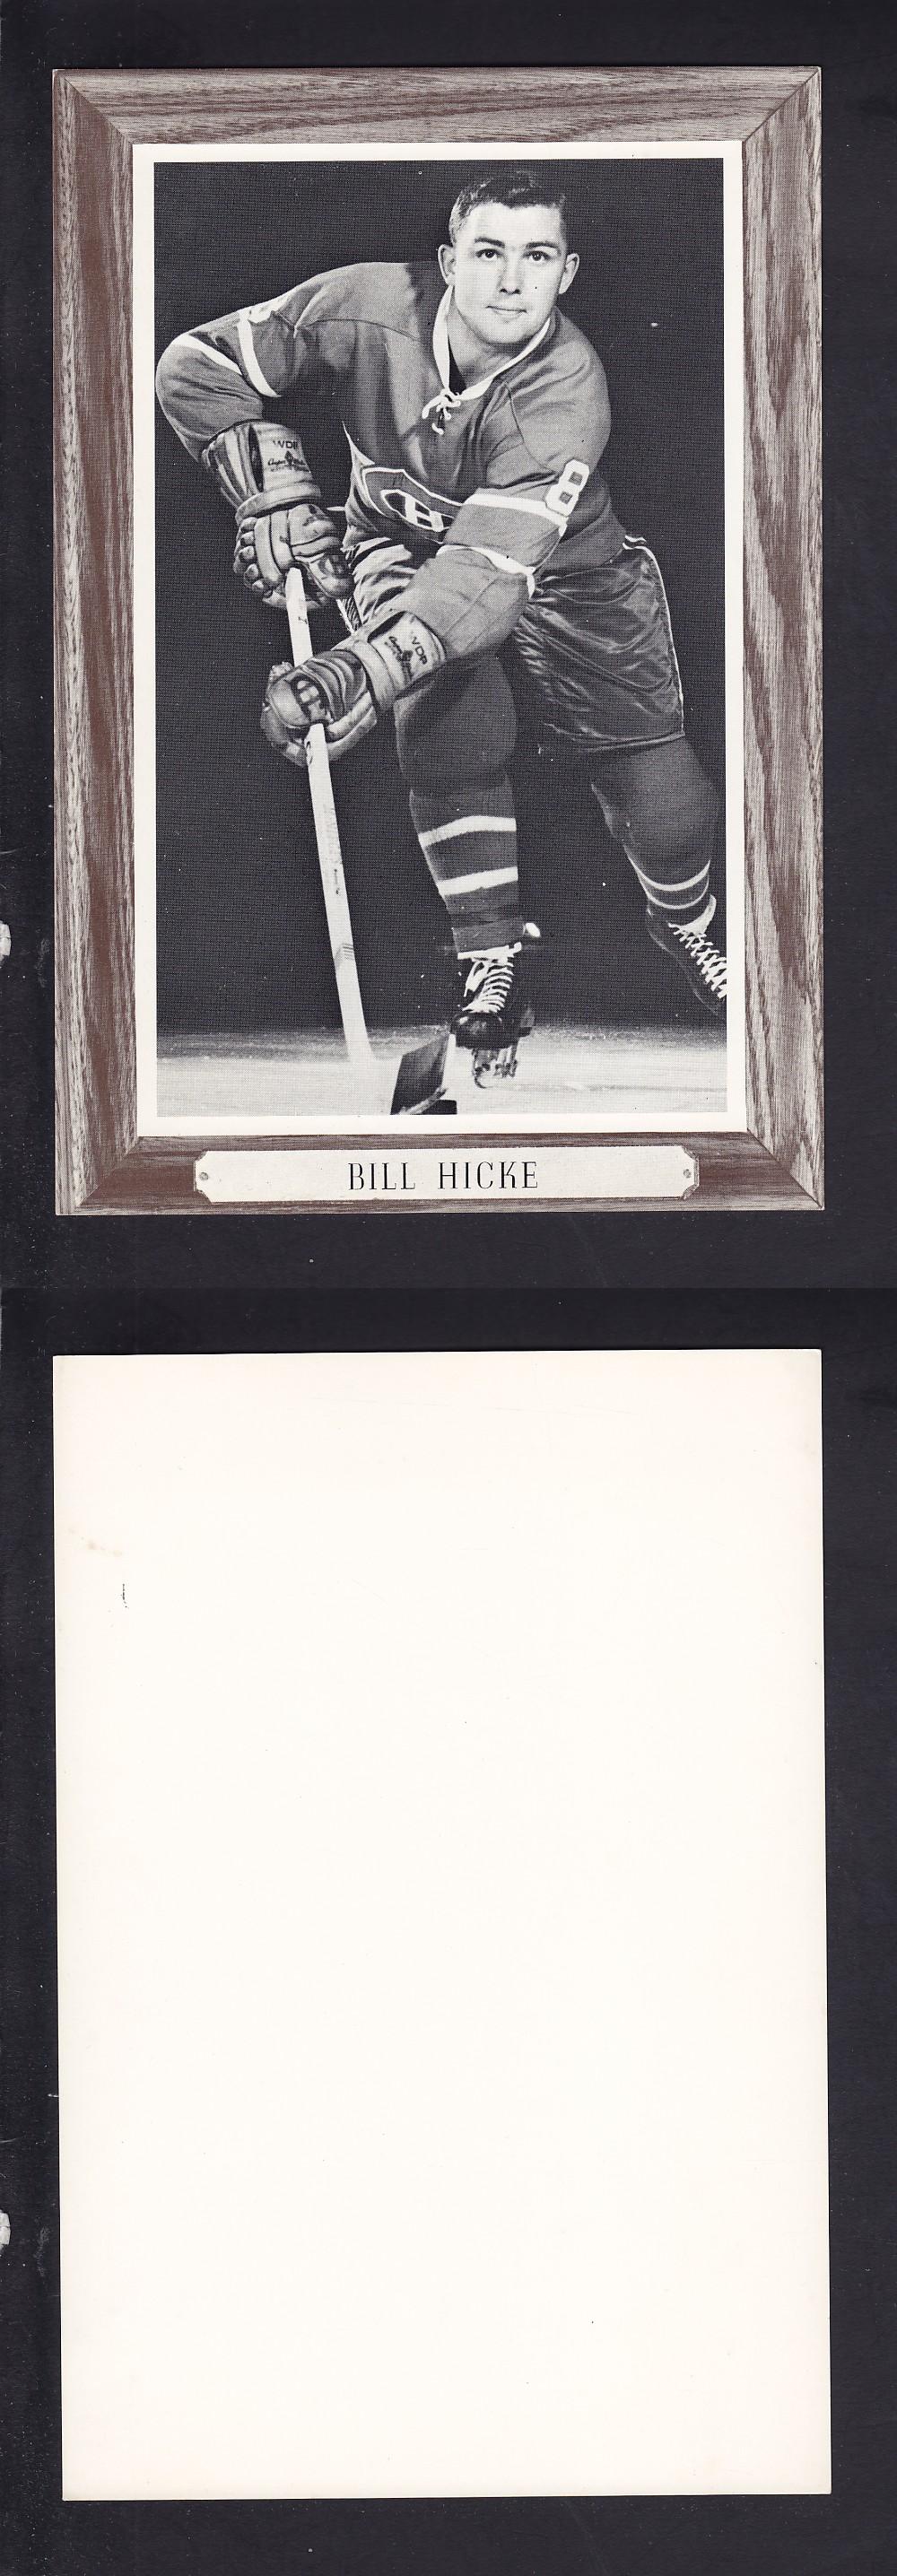 1964-67 BEEHIVE PHOTO GR. 3 B. HICKE photo